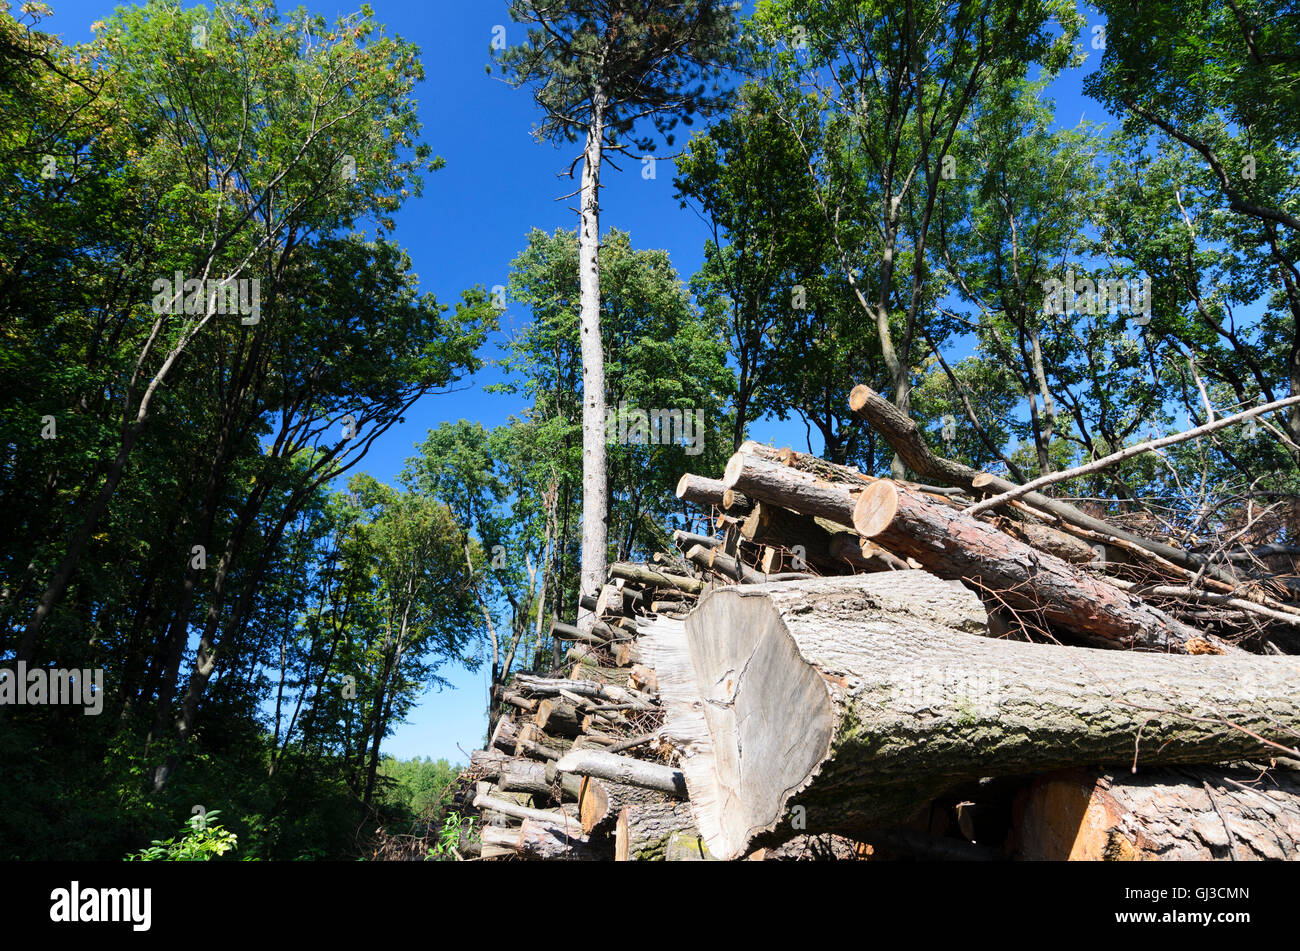 Gumpoldskirchen: felled tree trunks in the Vienna Woods, Austria, Niederösterreich, Lower Austria, Wienerwald, Vienna Woods Stock Photo